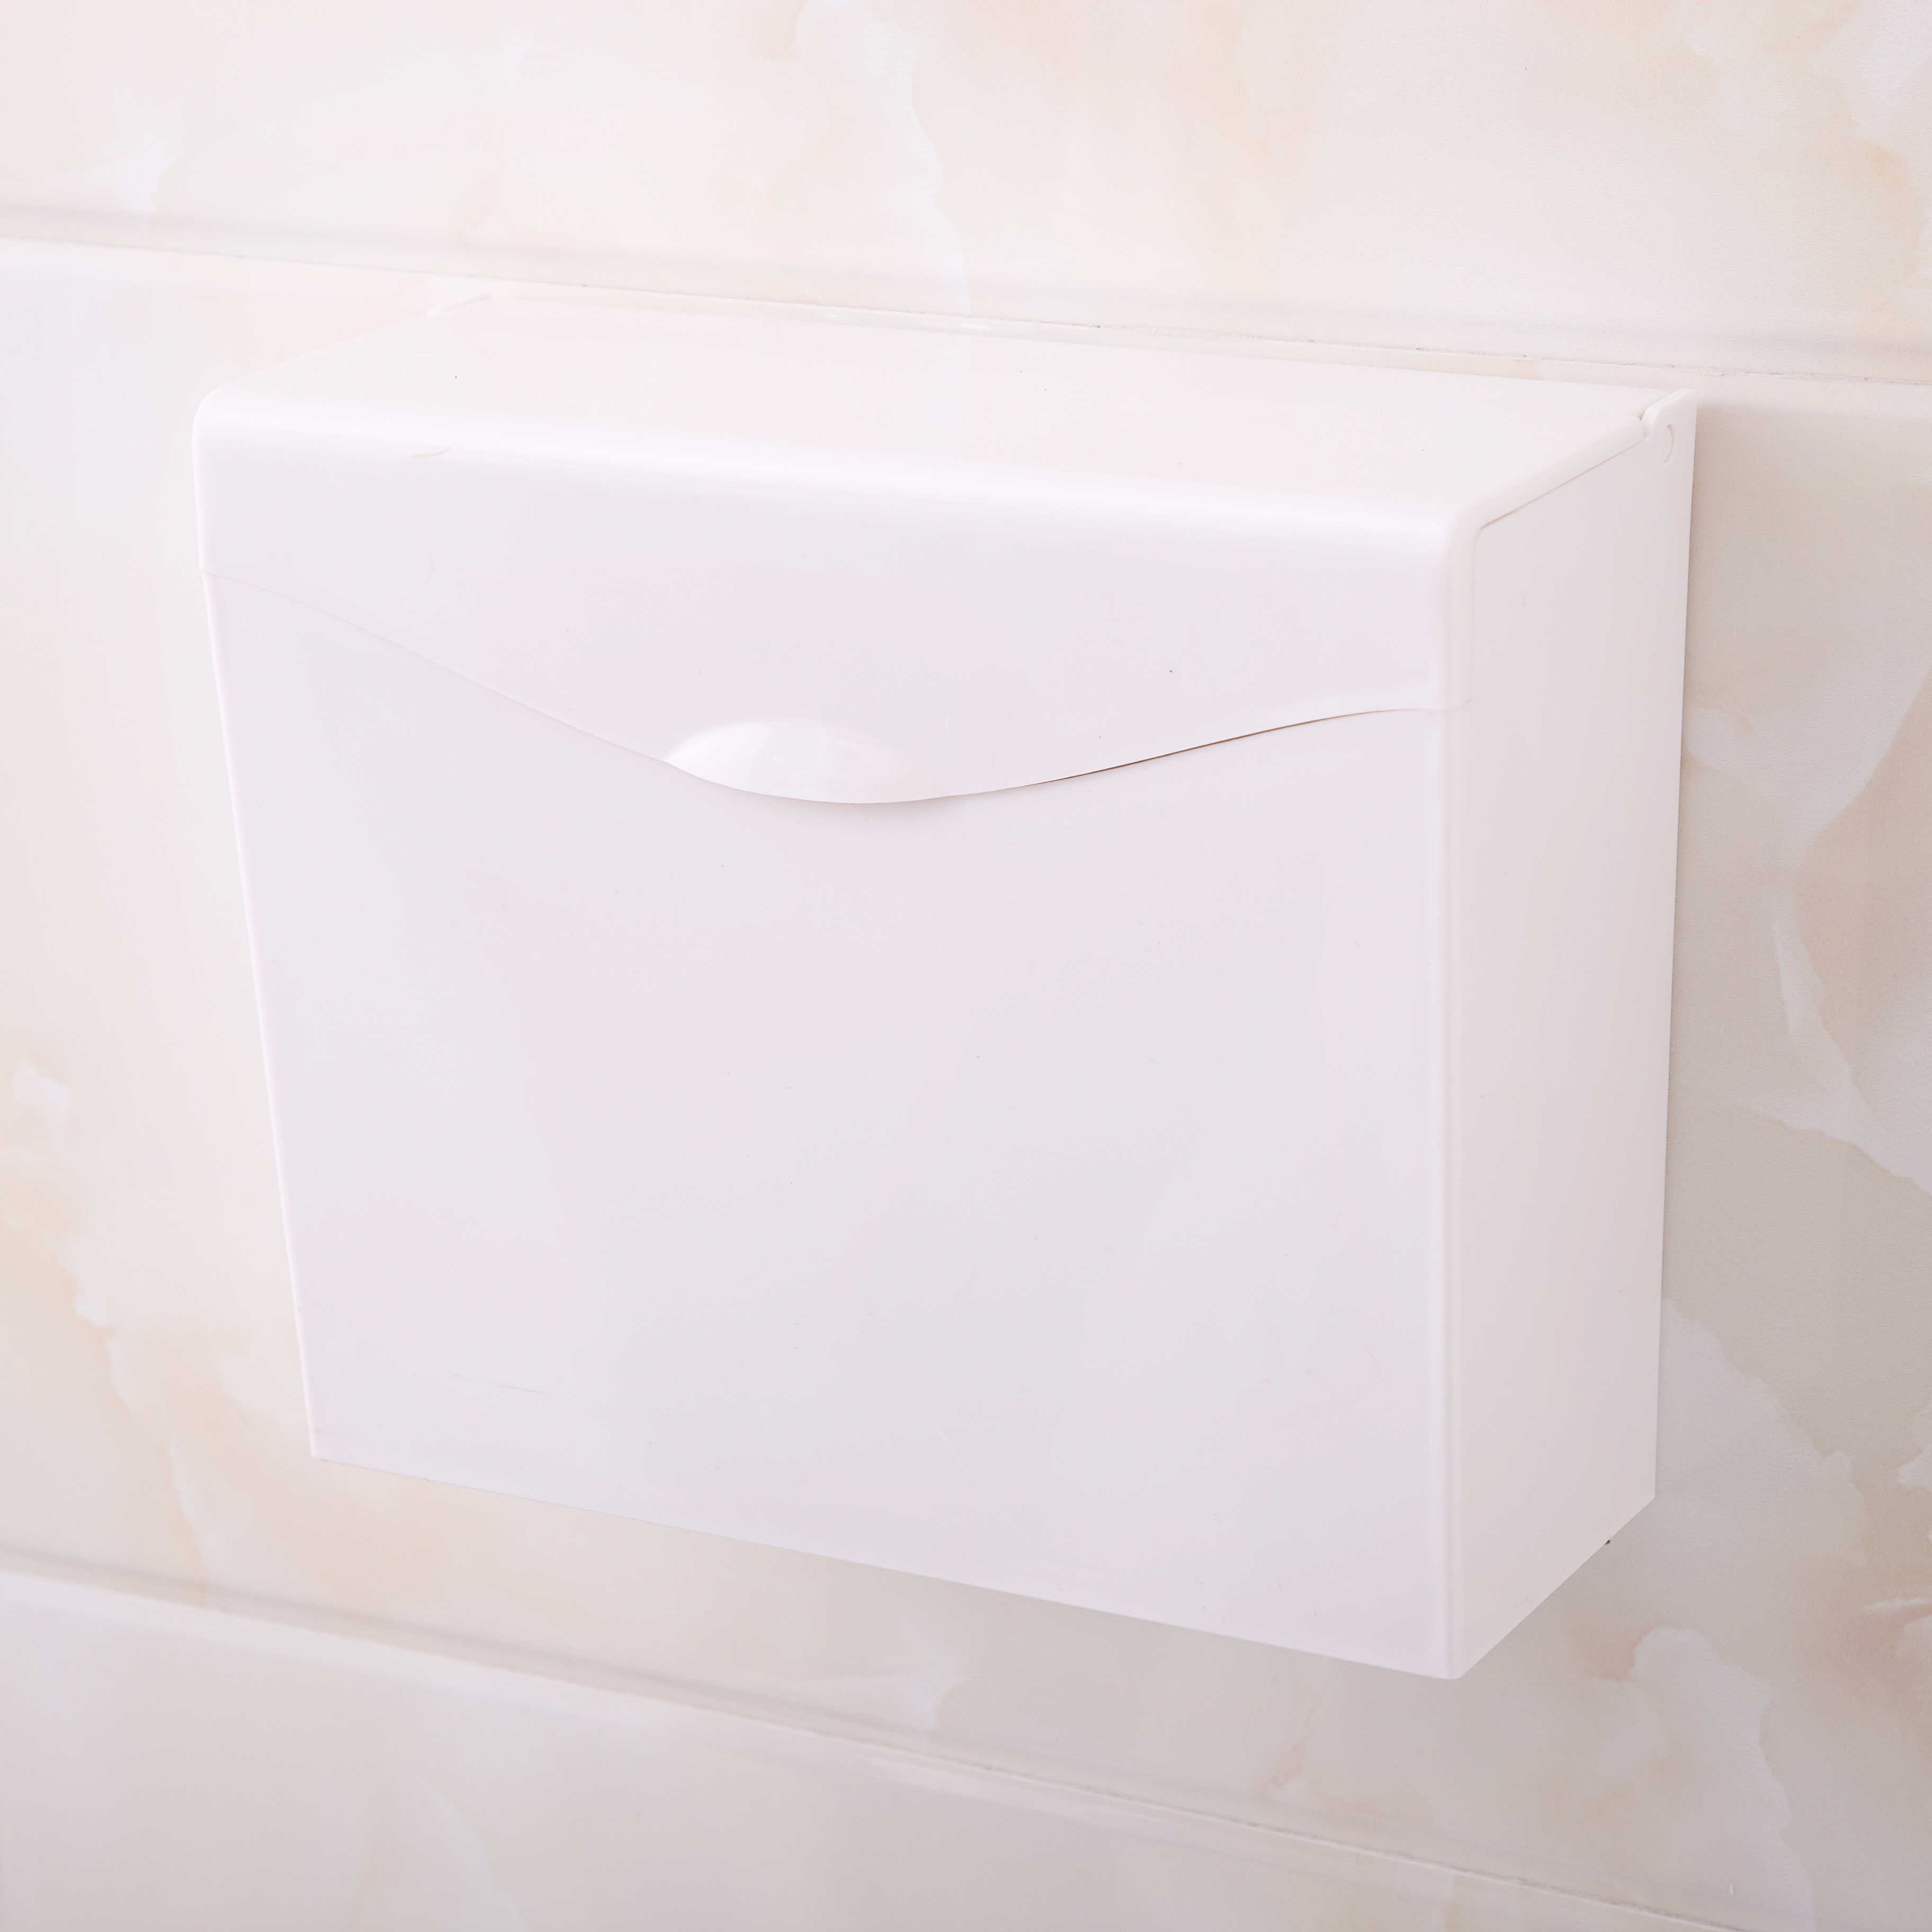 塑料紙巾盒廁紙盒浴室平板紙盒廁所手紙架方形草紙盒衛生間免打孔